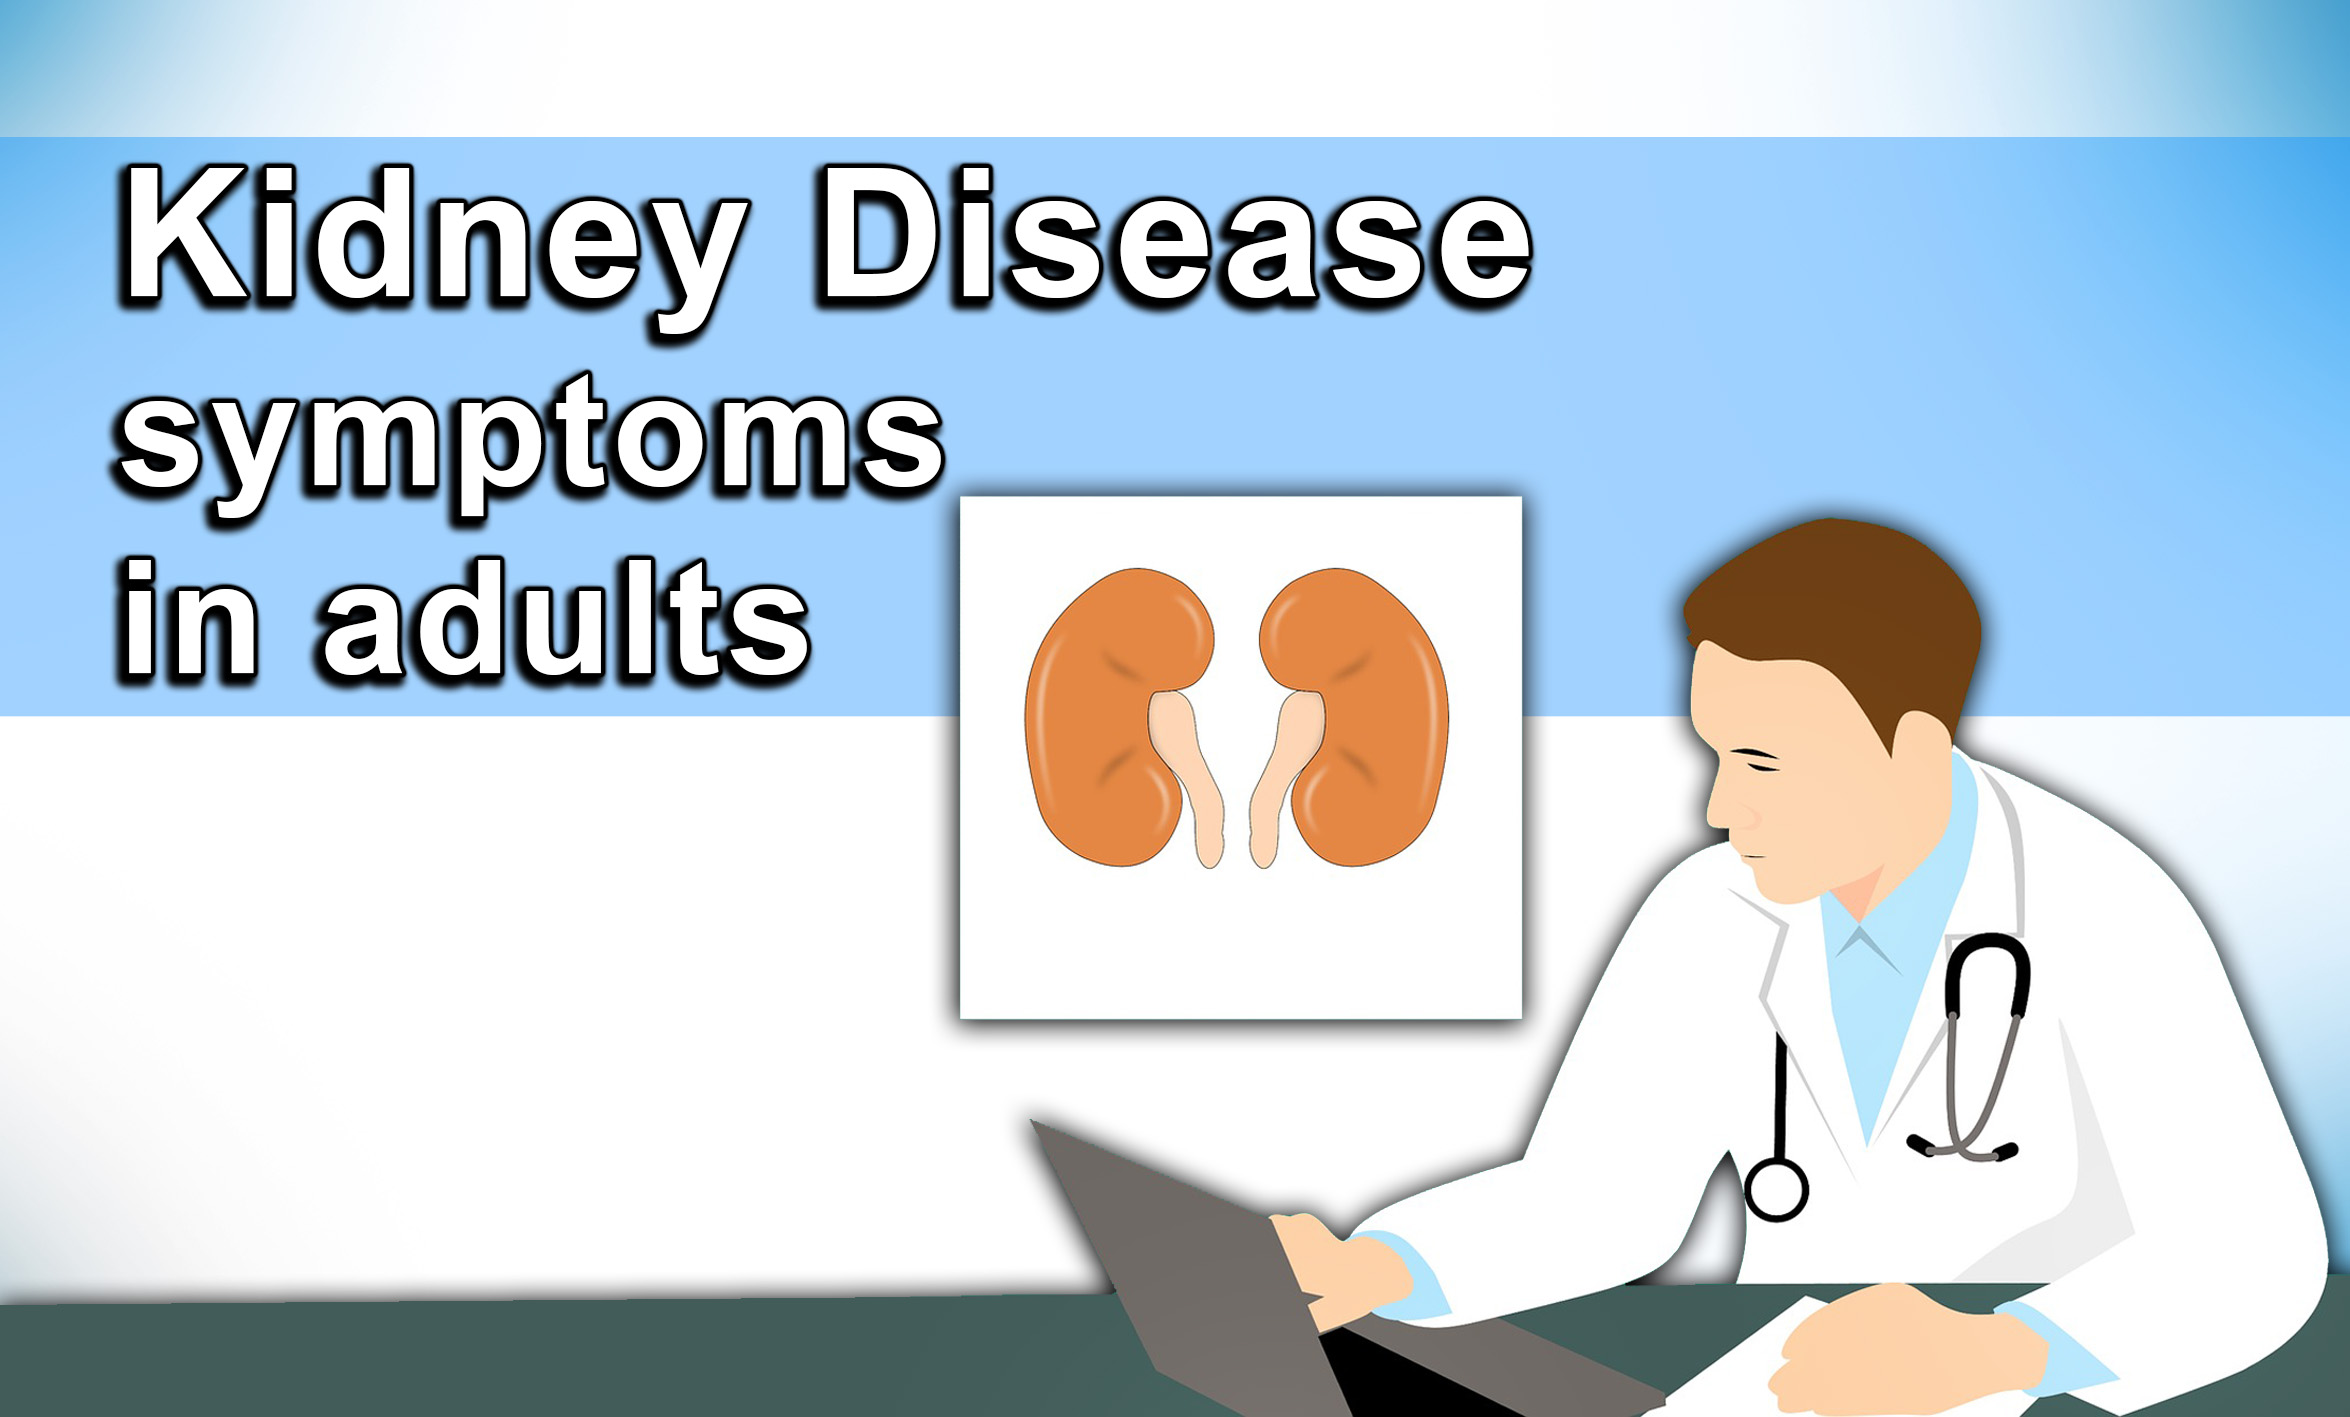 Kidney disease symptoms in adults